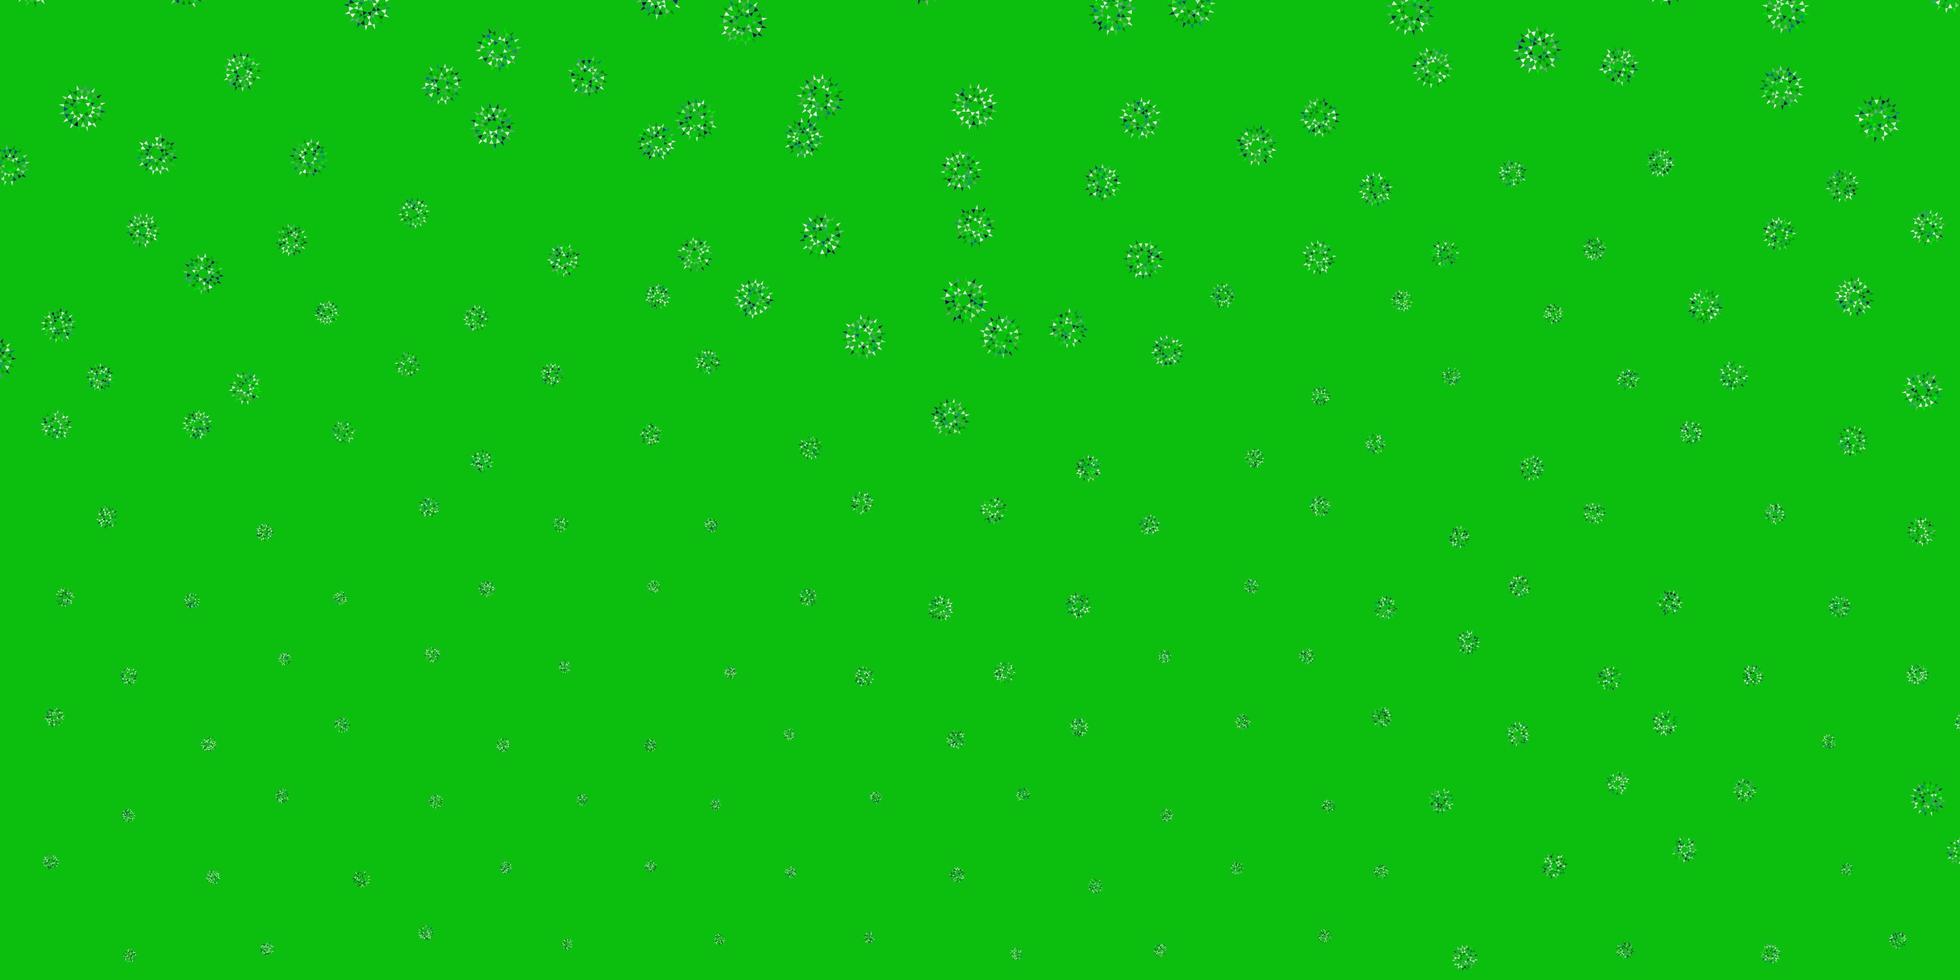 ilustraciones naturales del vector verde claro con flores.